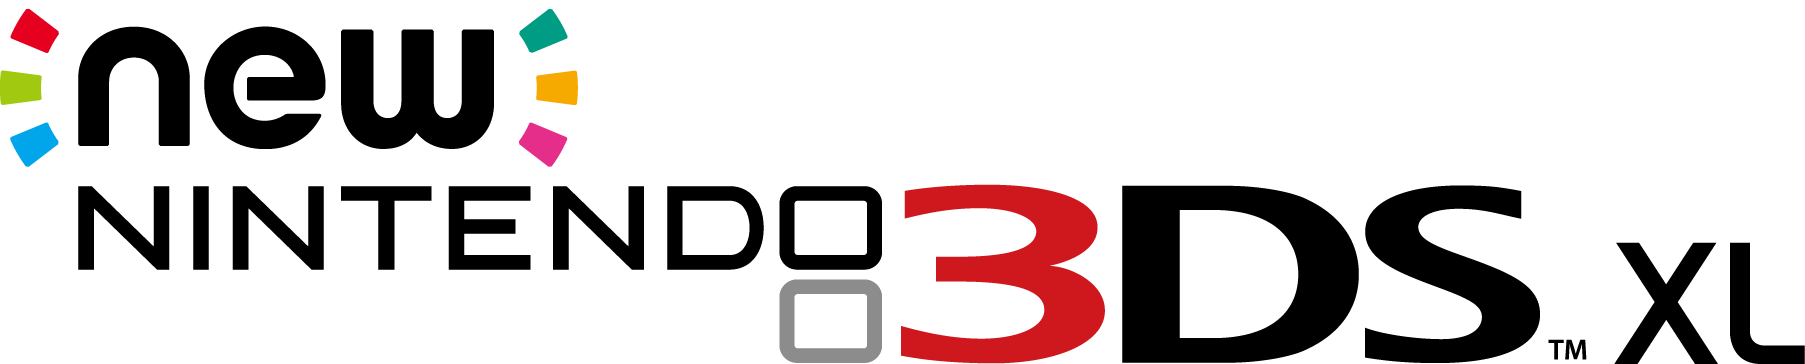 GameStop New Logo - Nintendo NEW 3DS XL - Black for Nintendo 3DS | GameStop